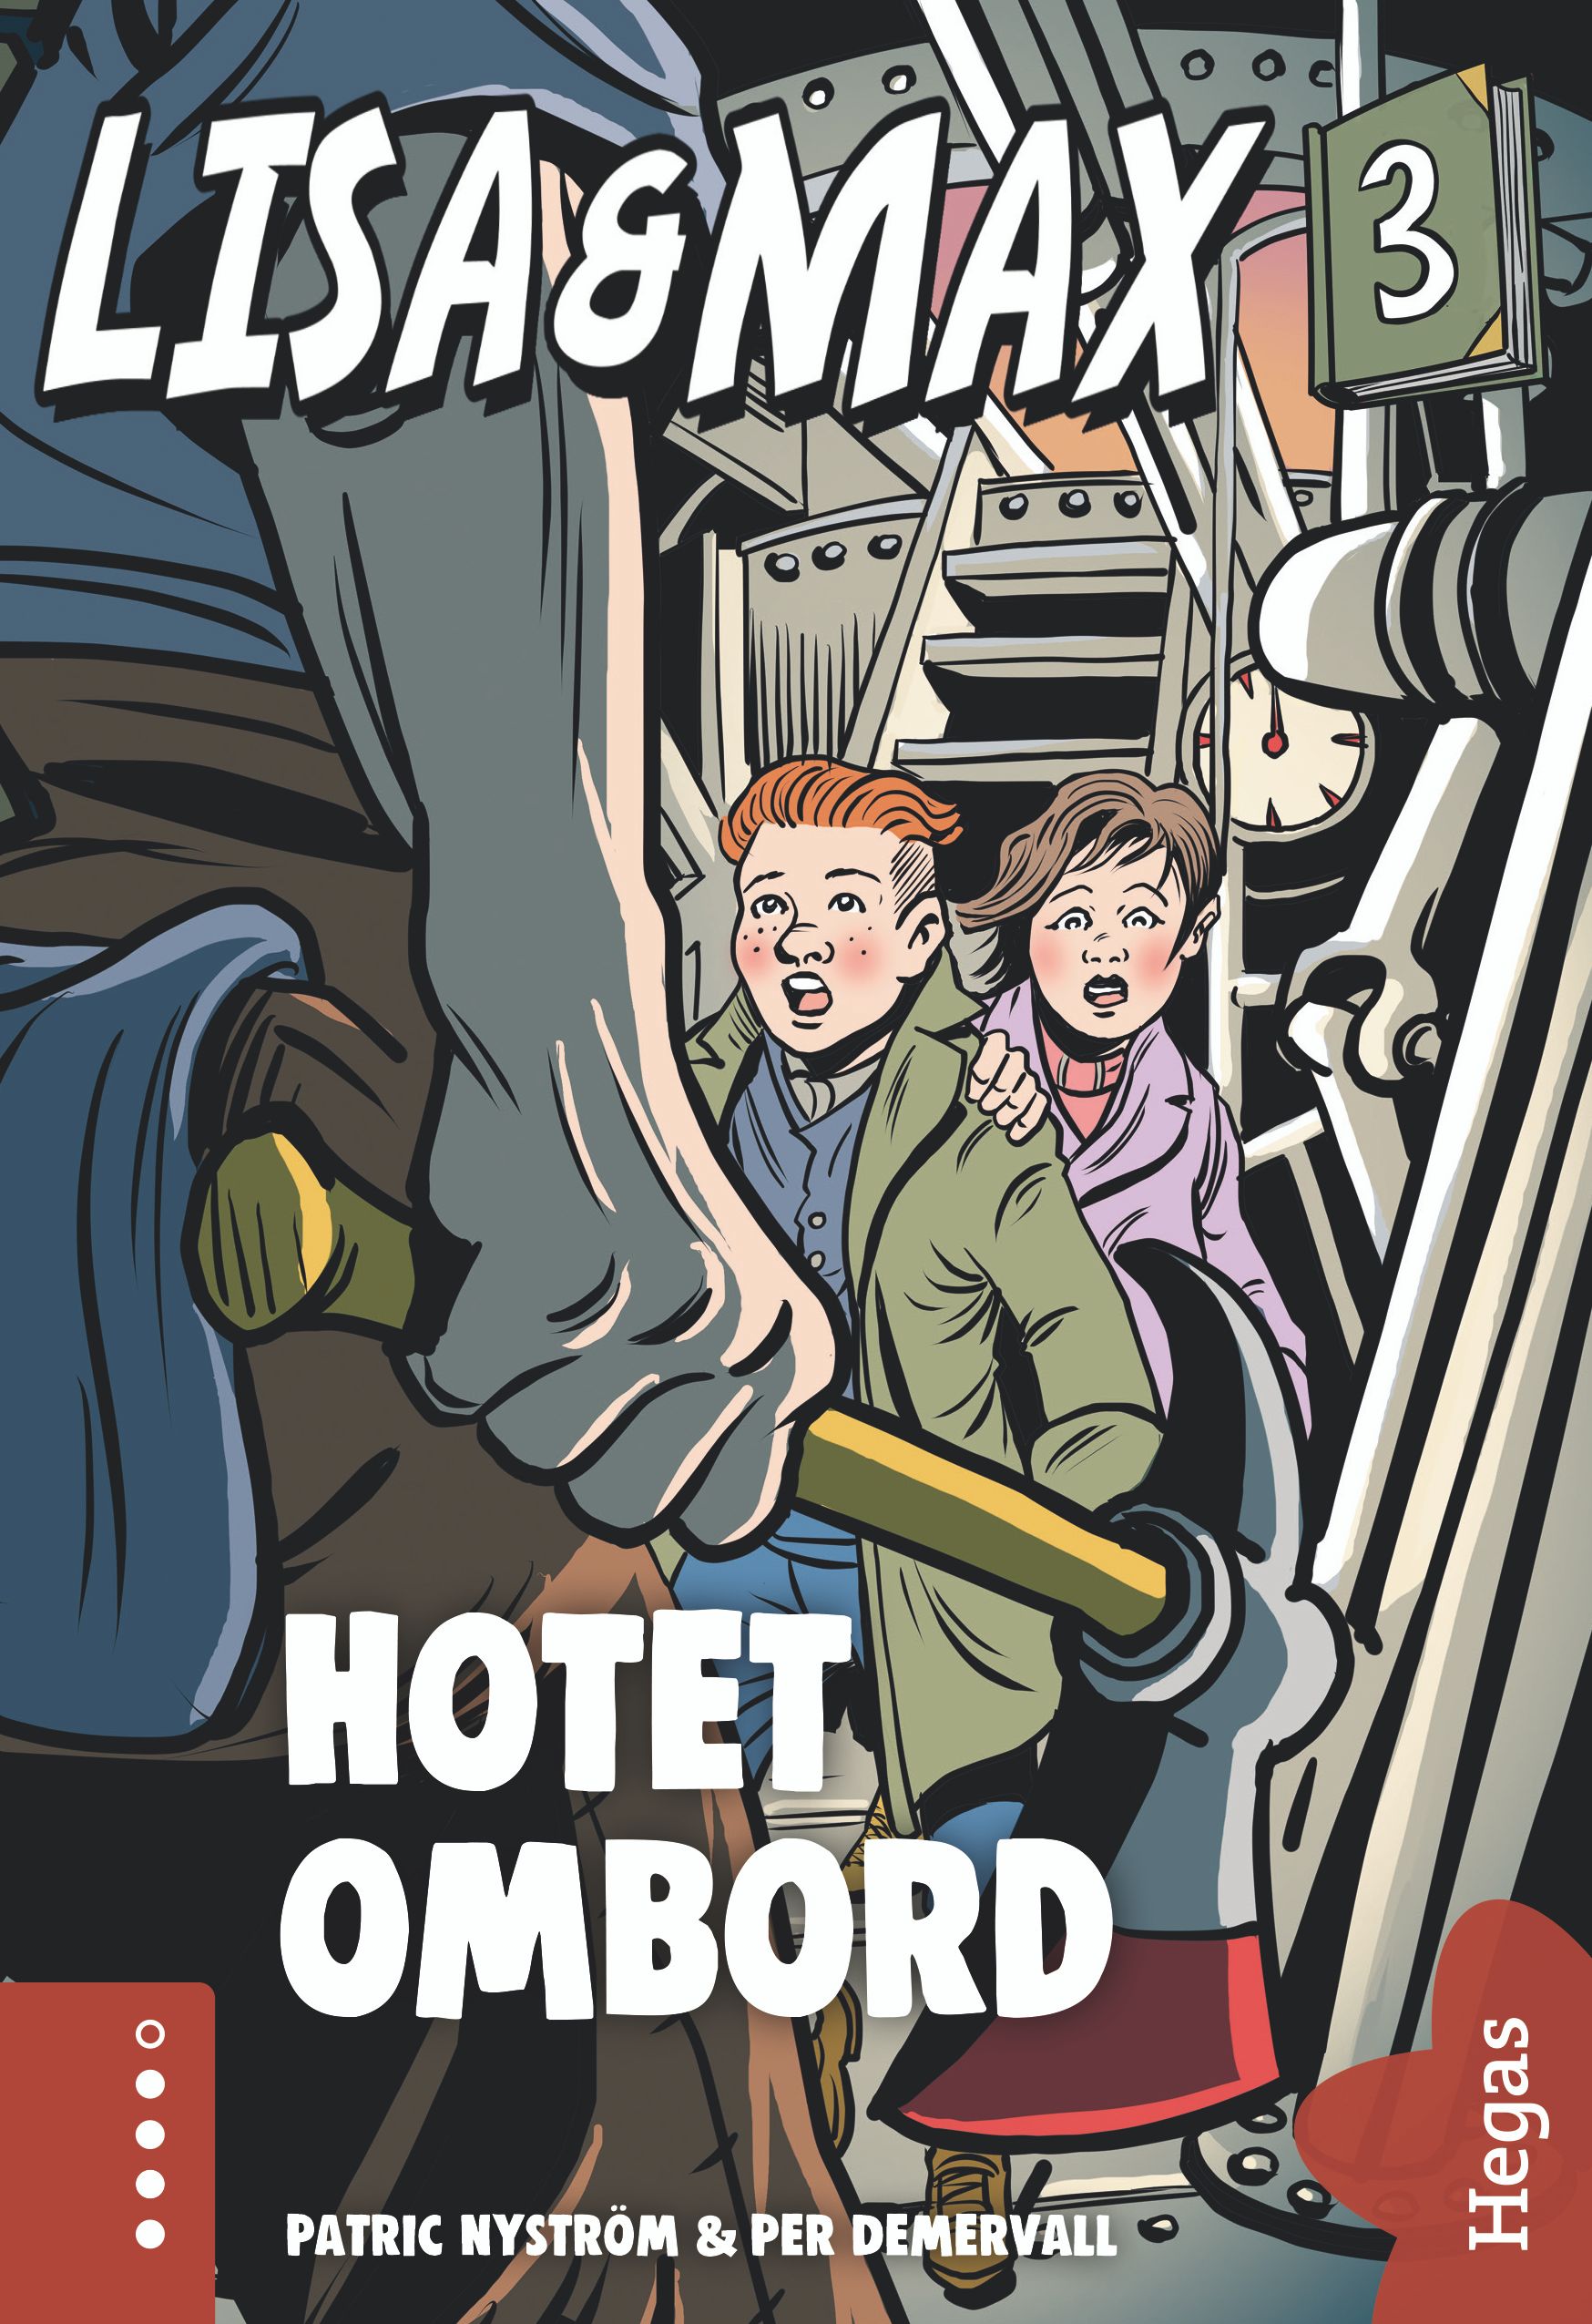 Lisa och Max - Hotet ombord, e-bok av Patric Nyström